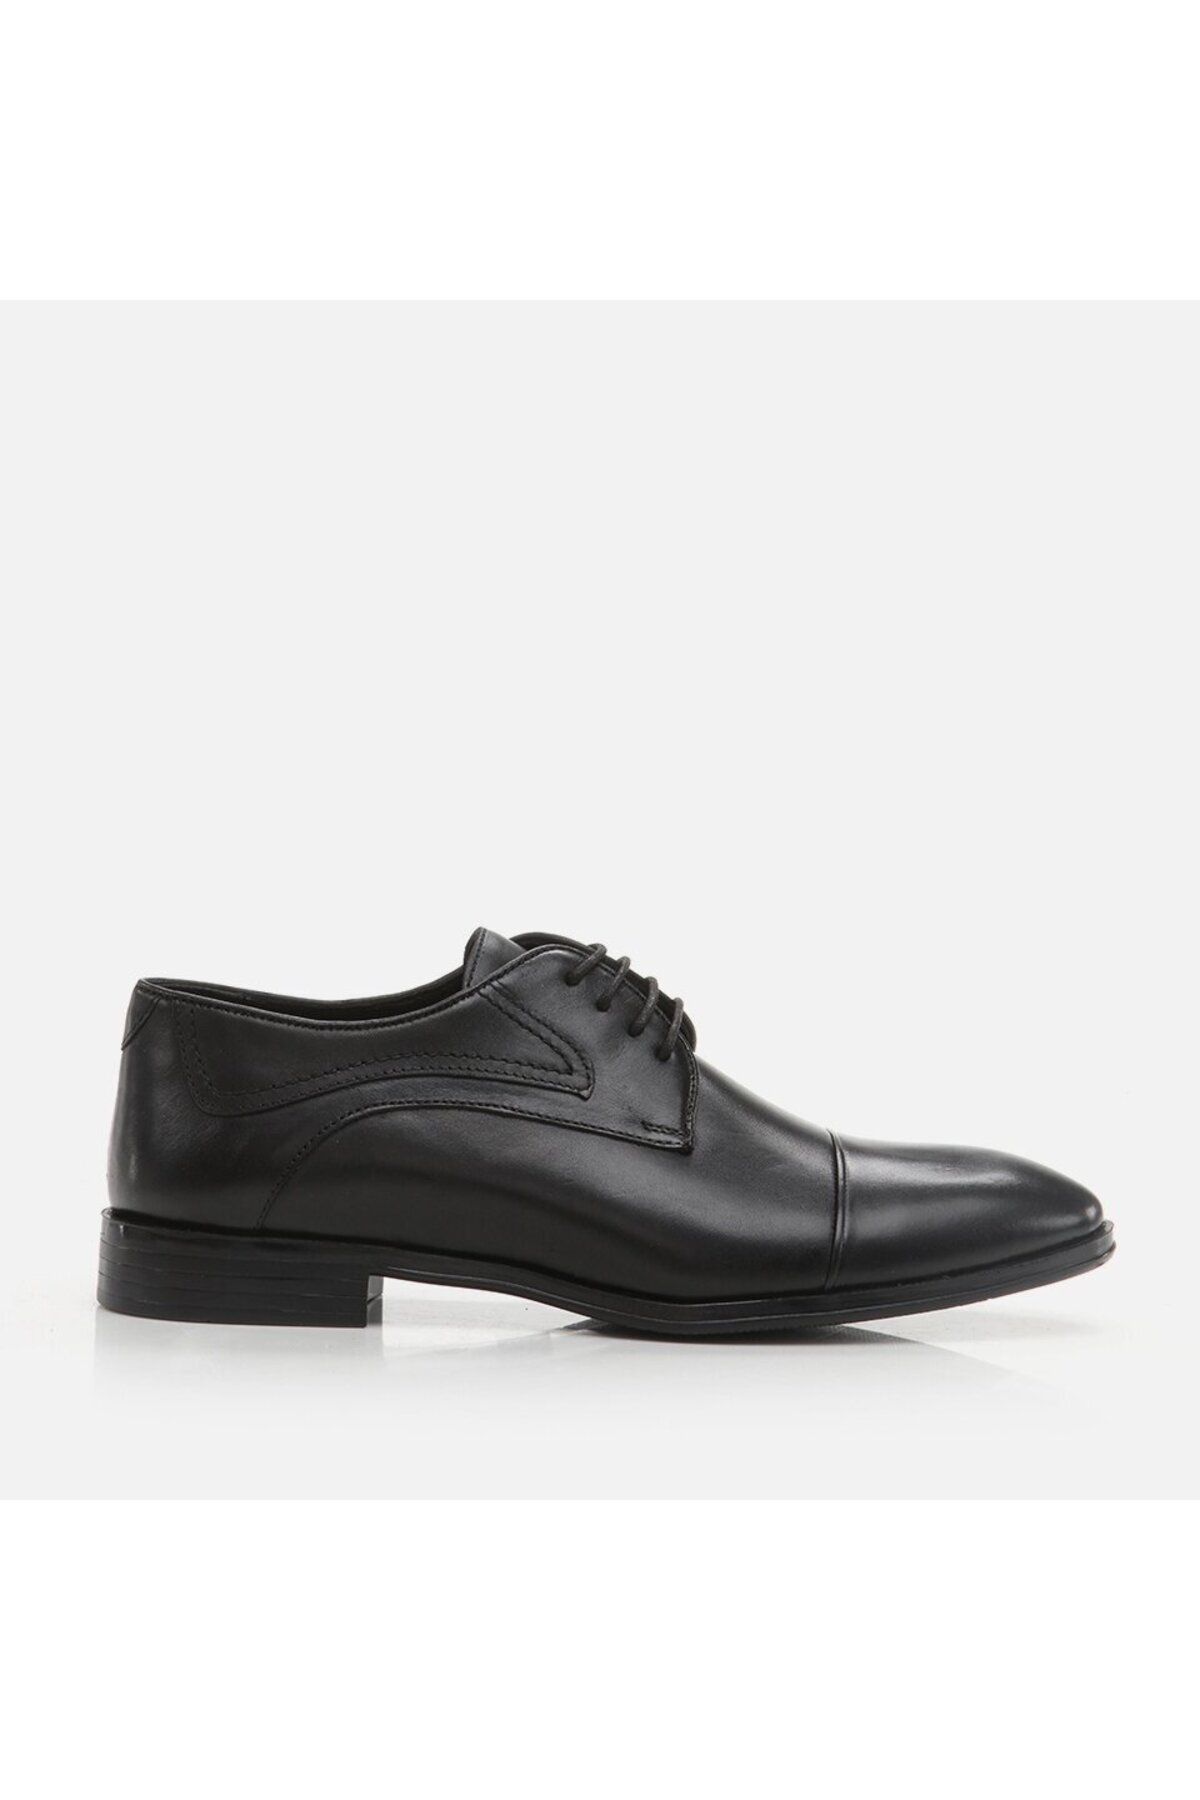 Hotiç Hakiki Deri Siyah Erkek Klasik Ayakkabı